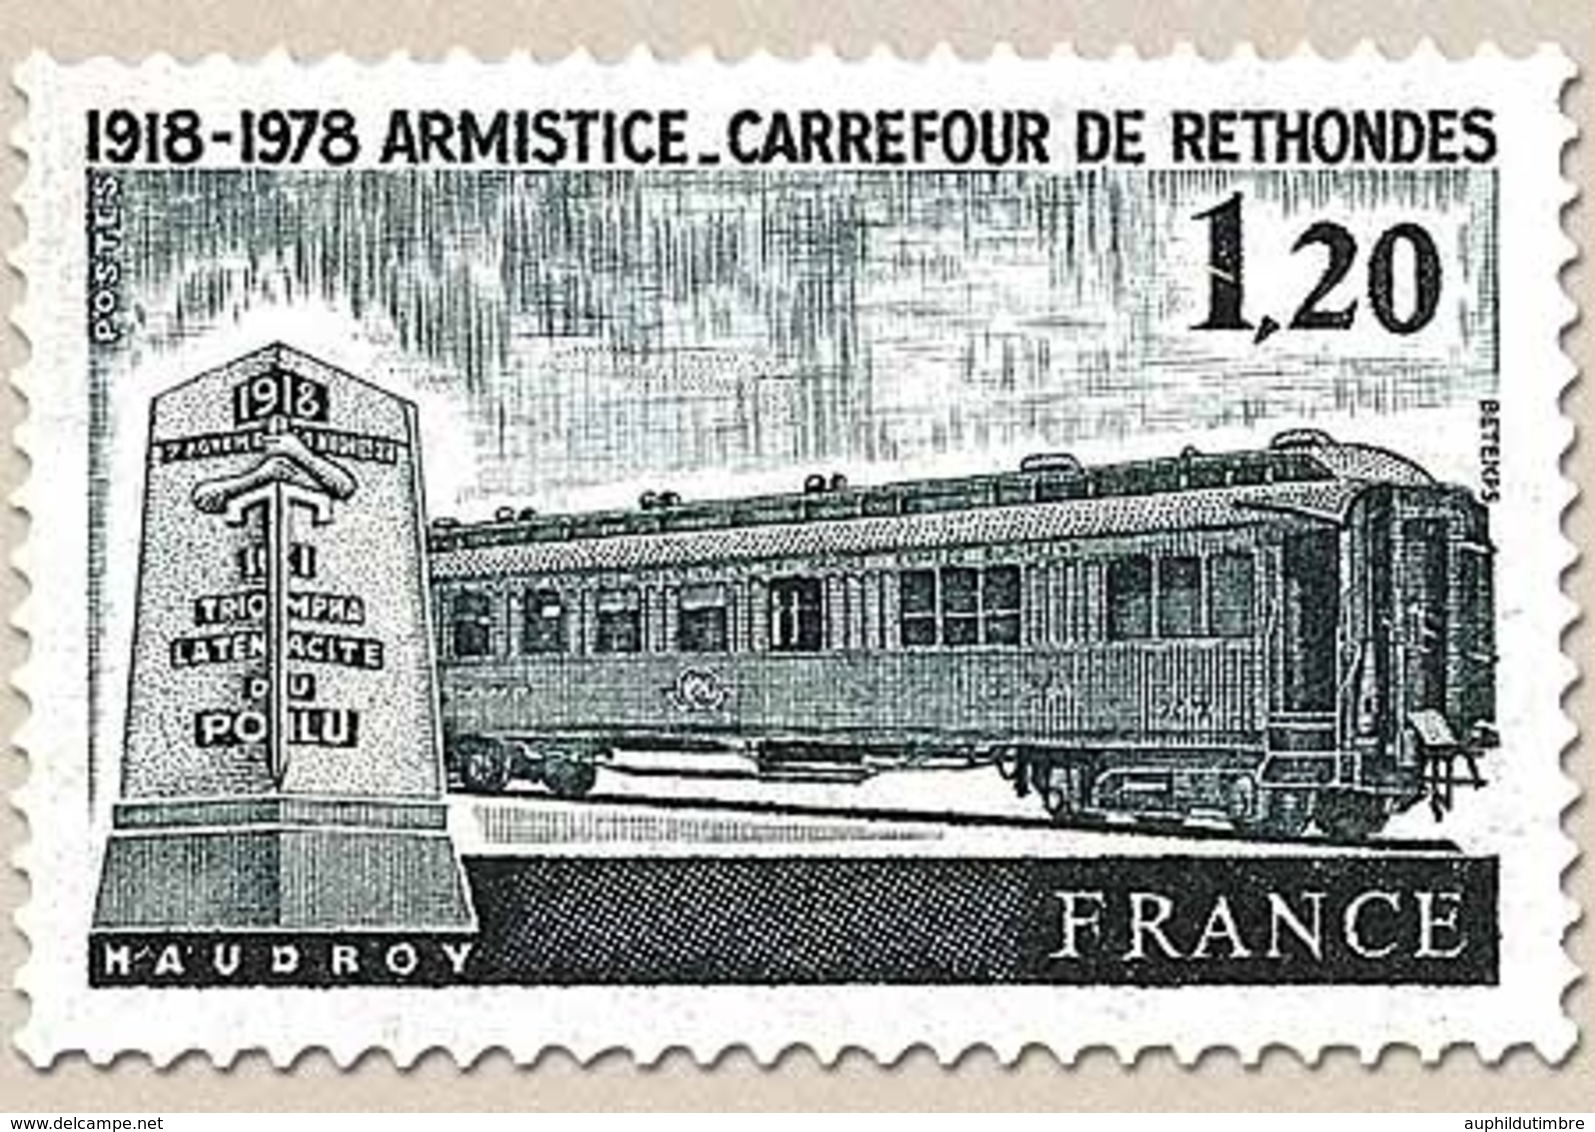 60e Anniversaire De L'Armistice à Rethondes. Le Wagon De L'Armistice 1f.20 Noir Y2022 - Unused Stamps